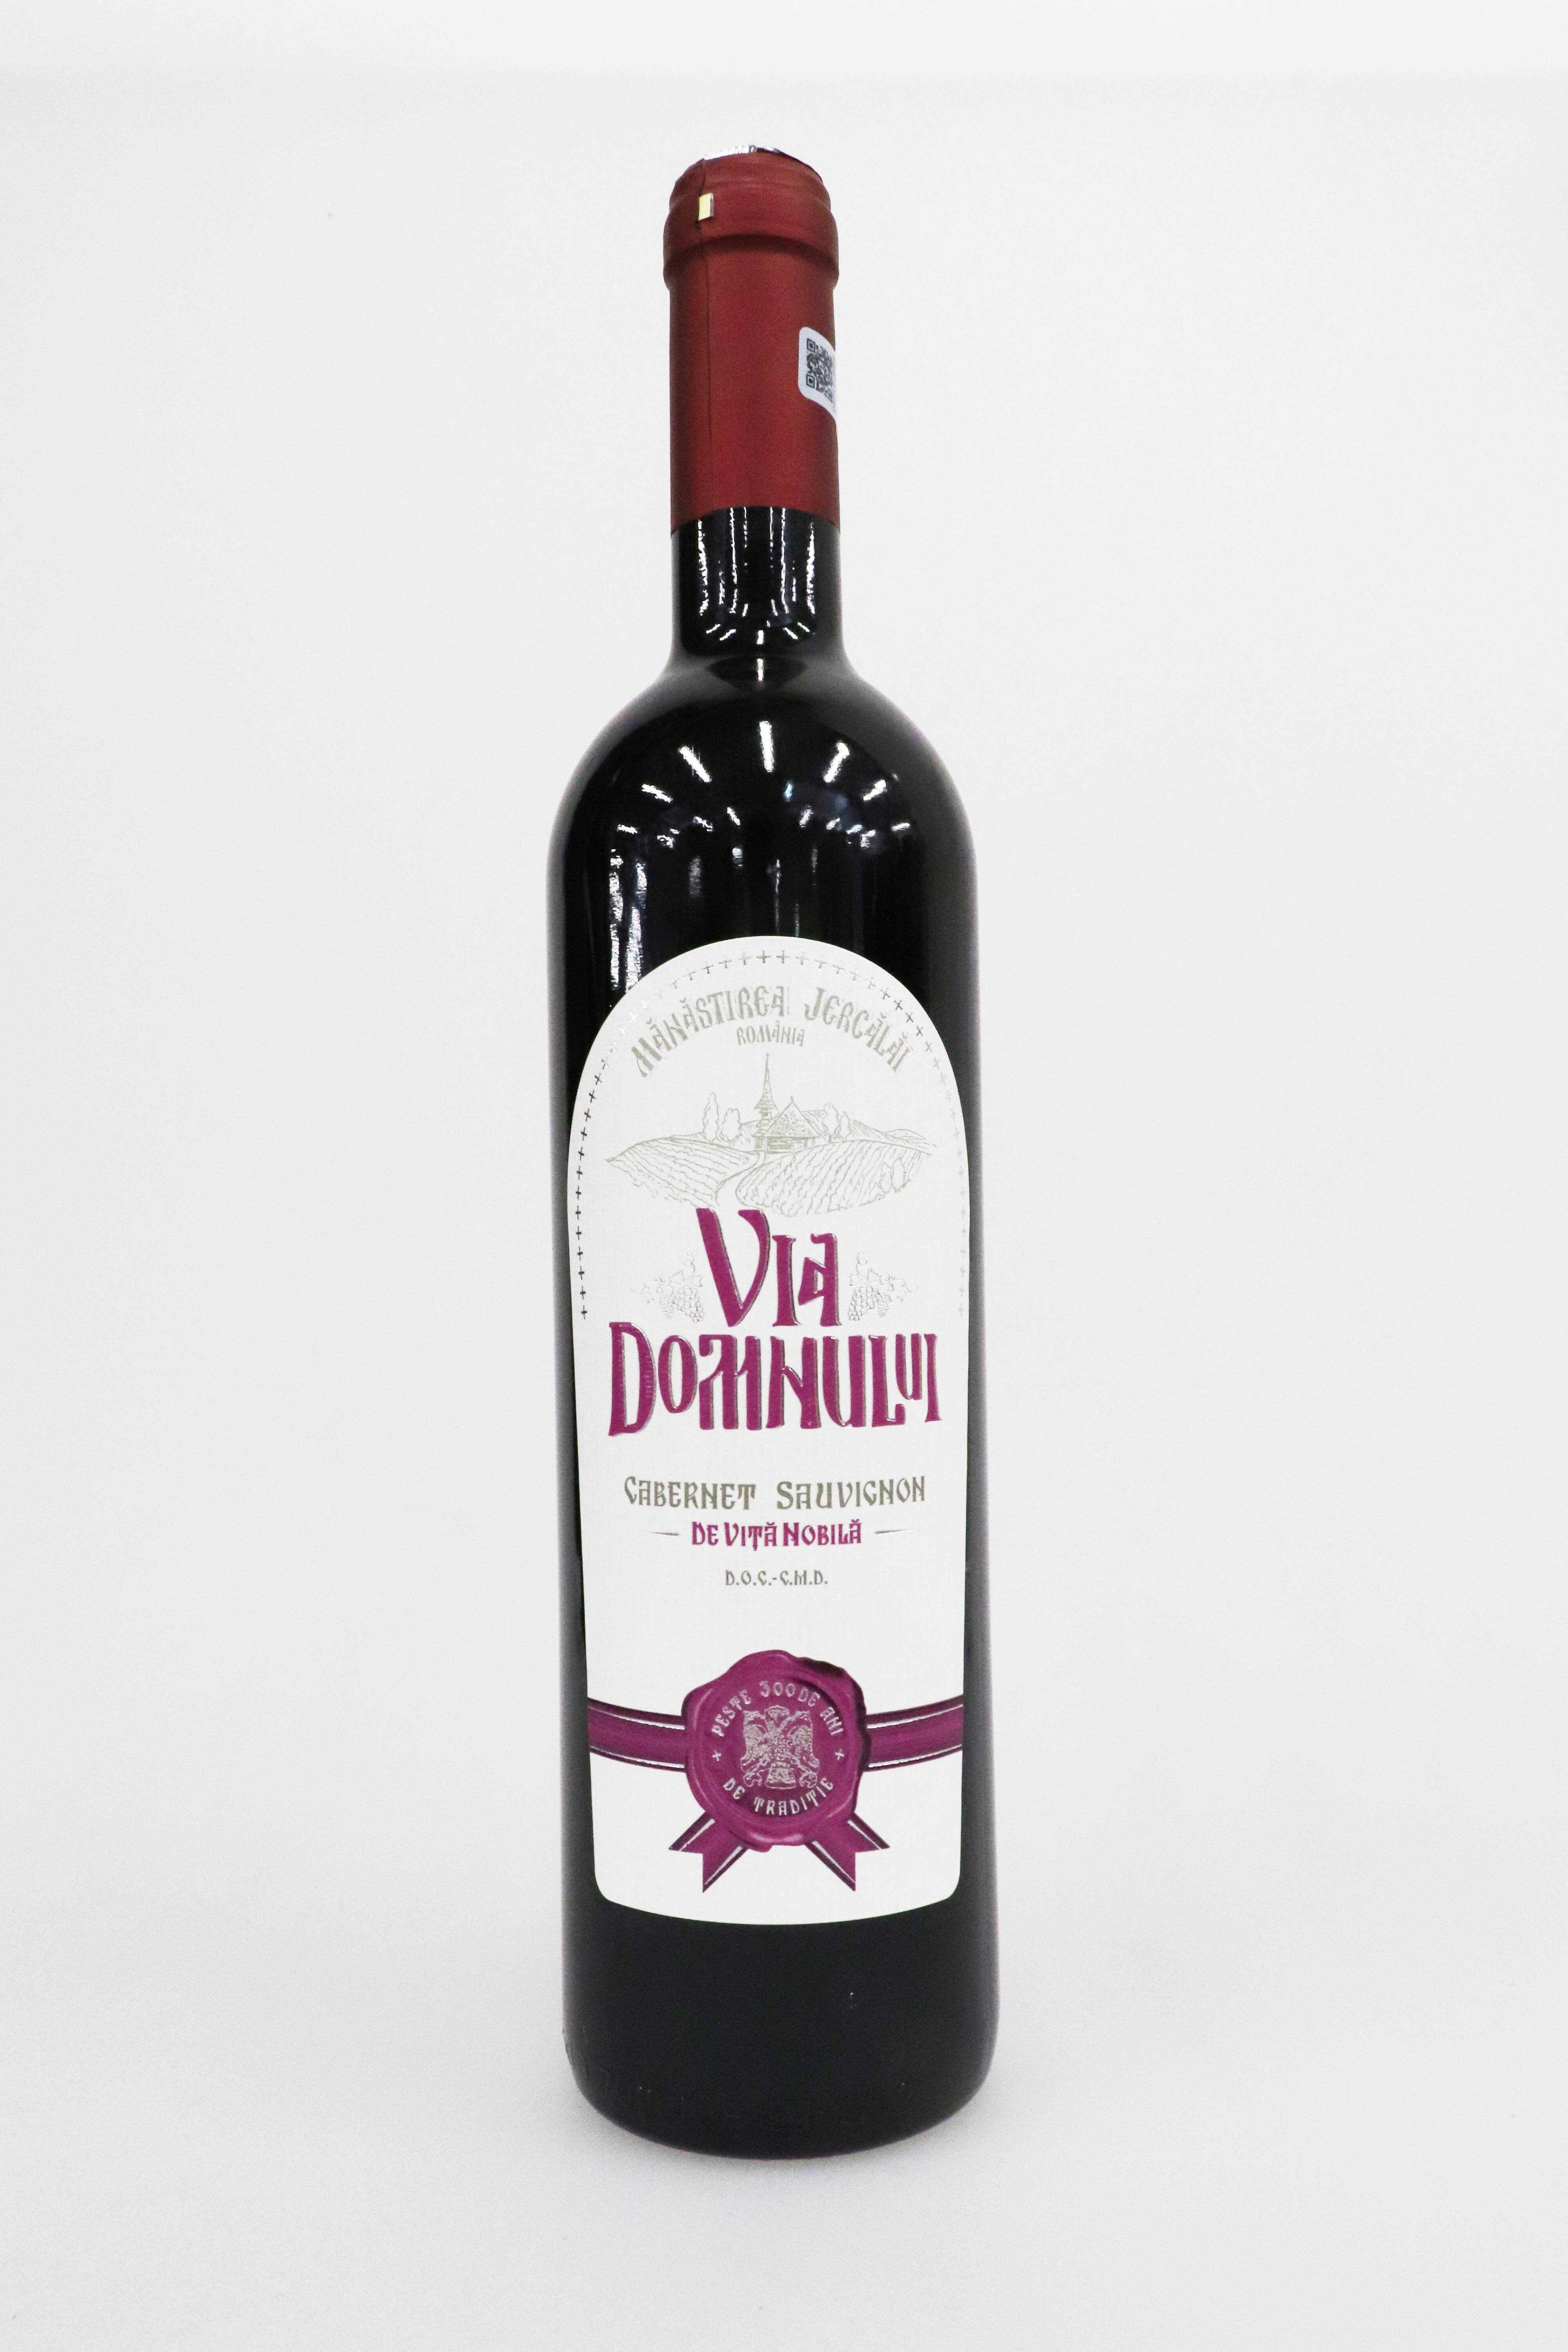 Vin rosu - Cabernet Sauvignon, sec, 2012 | Via Domnului